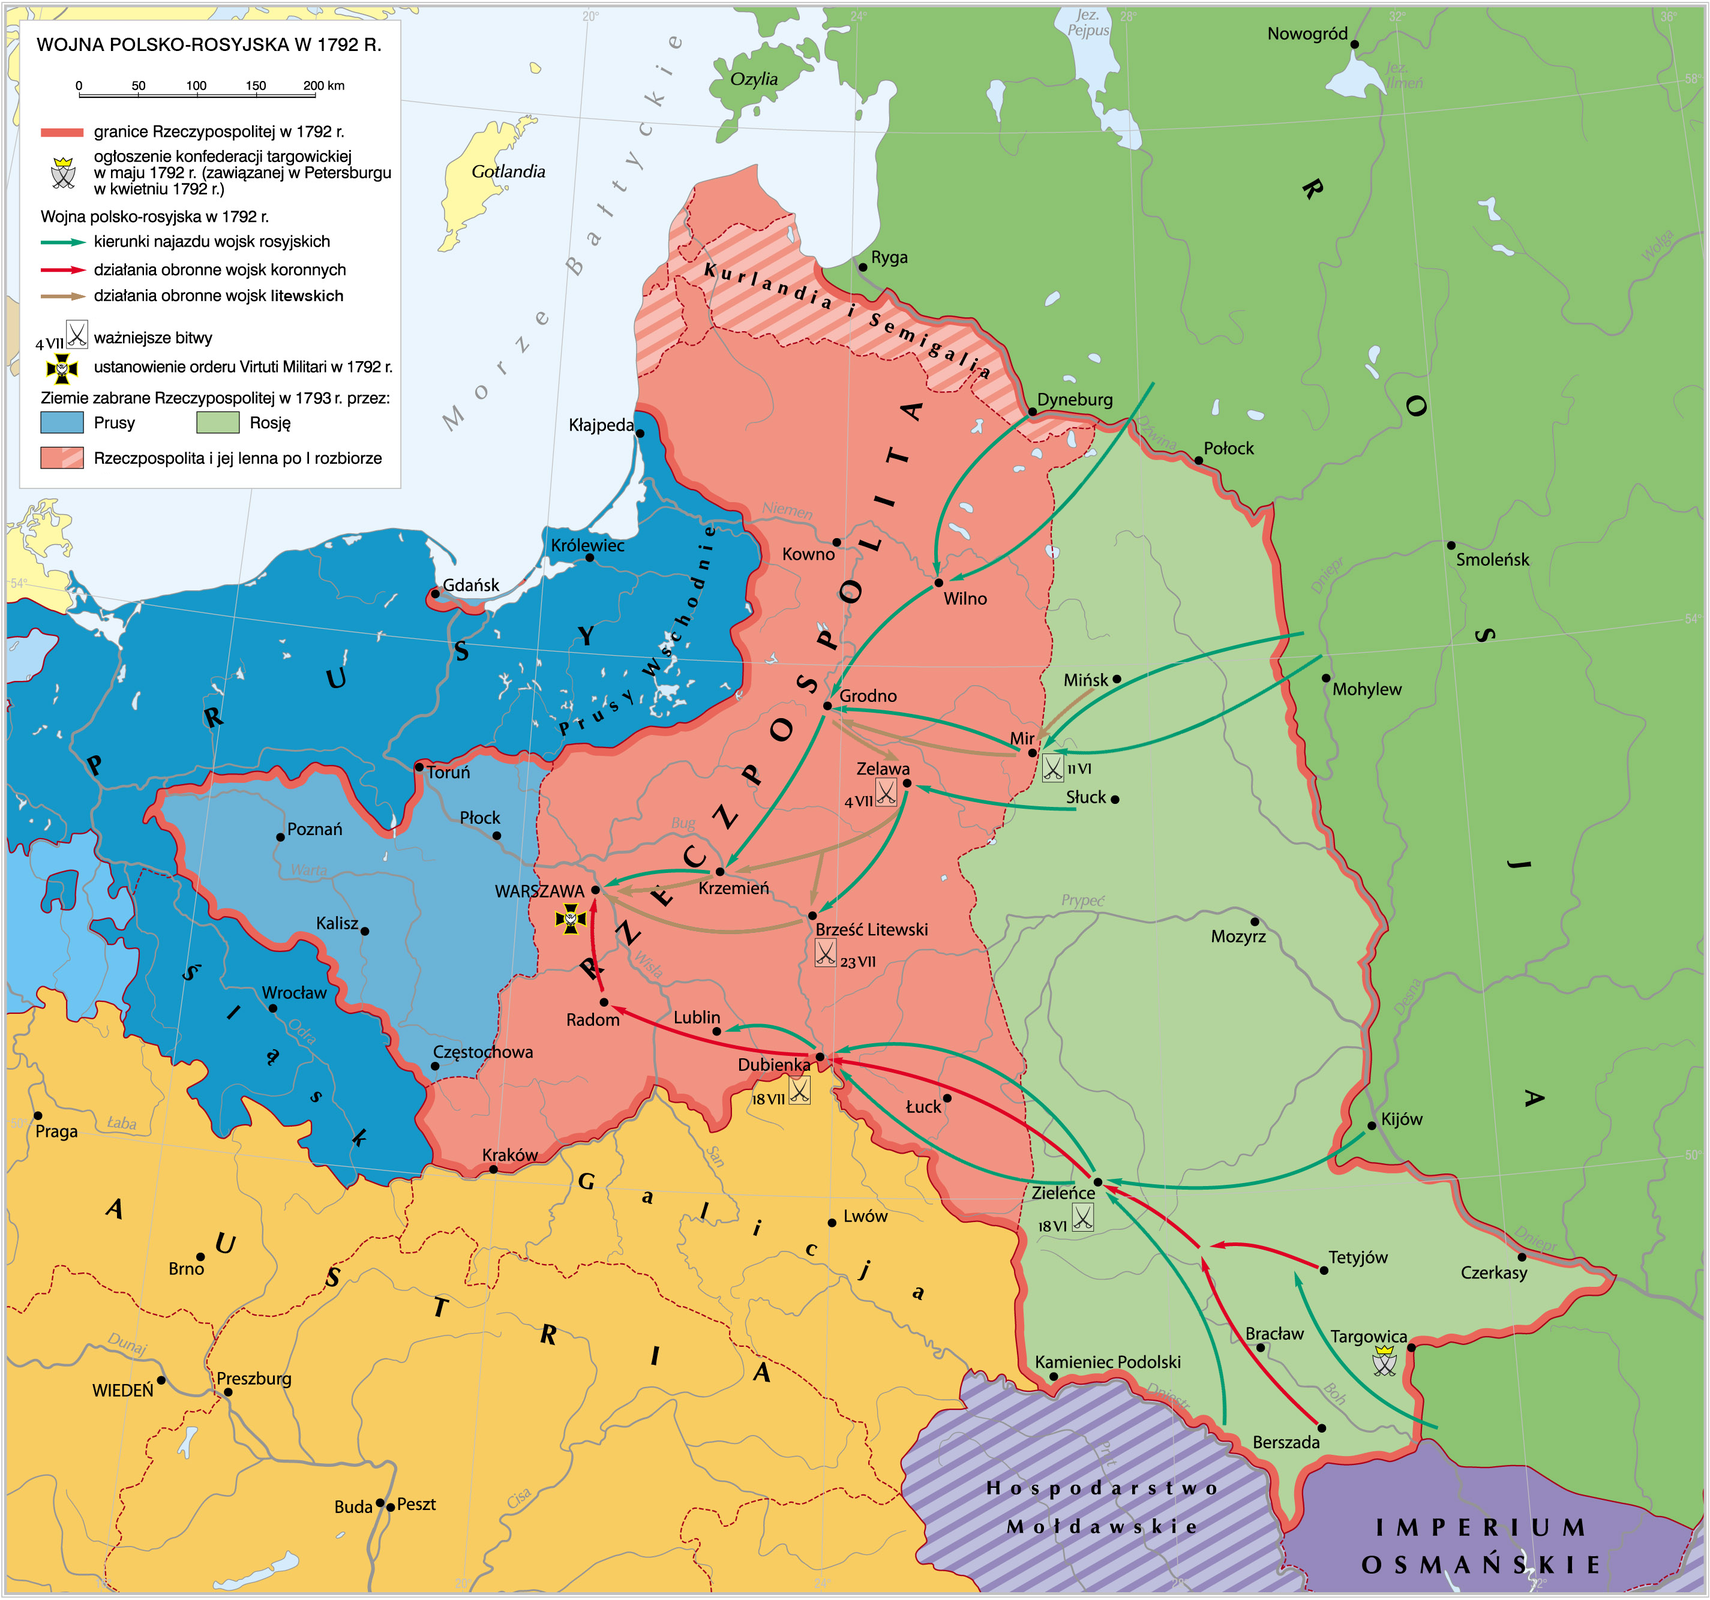 Wojna polsko-rosyjska w 1792 r. Wojna polsko-rosyjska w 1792 r. Źródło: Krystian Chariza i zespół, licencja: CC BY-SA 4.0.